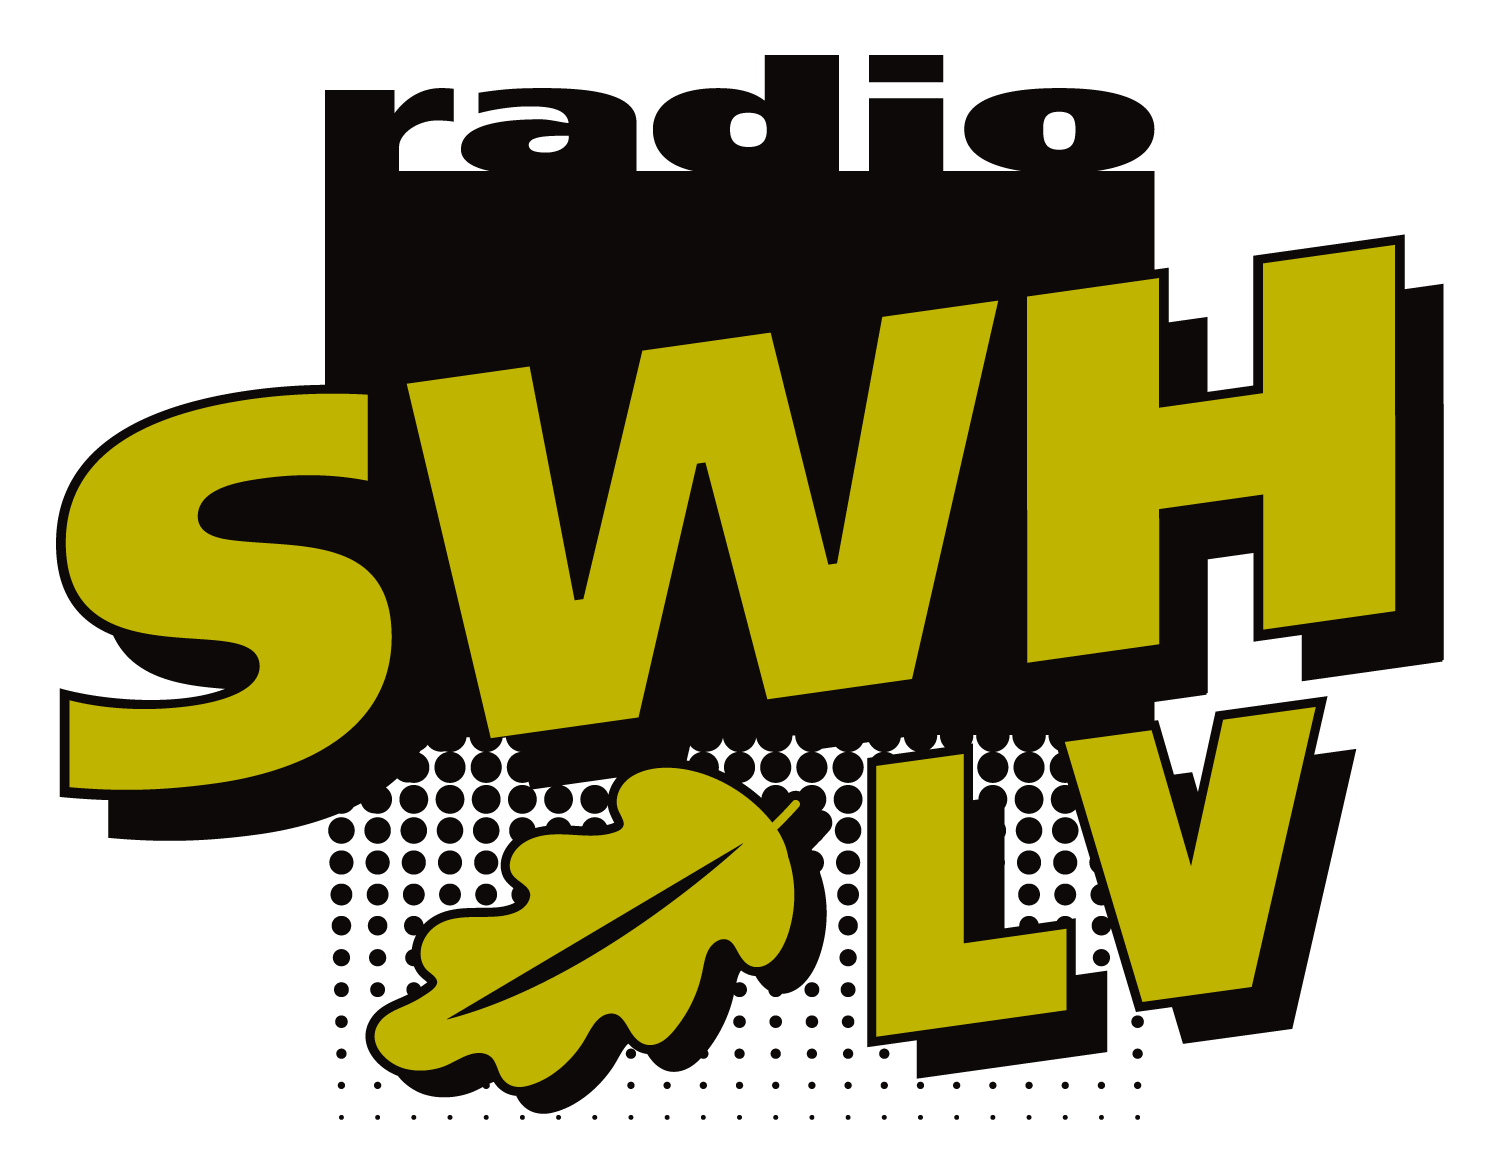 Radio SWH - Spin FM